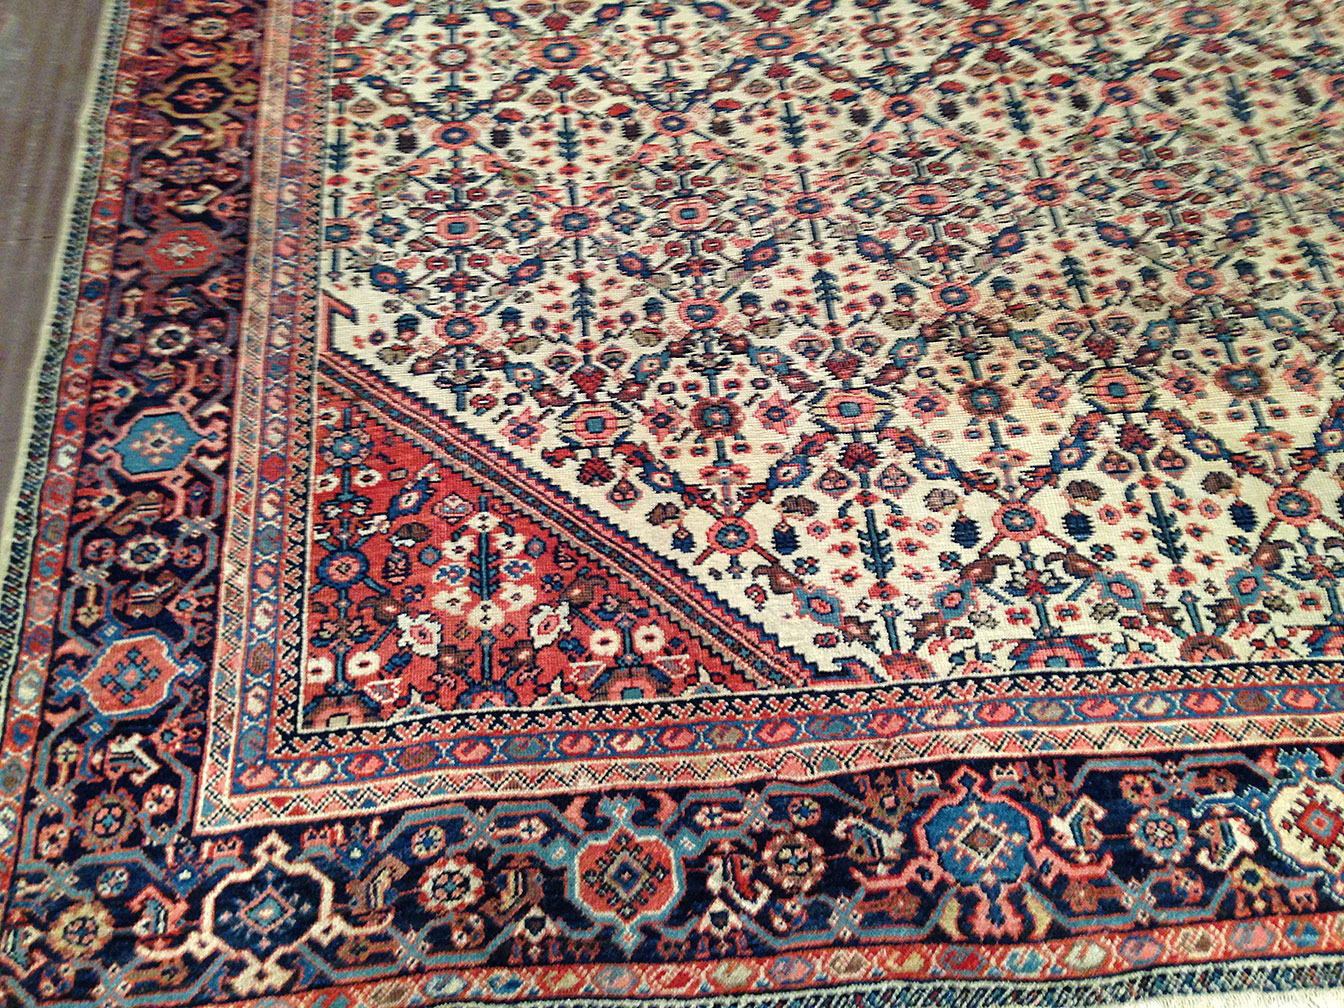 Antique mahal Carpet - # 50737